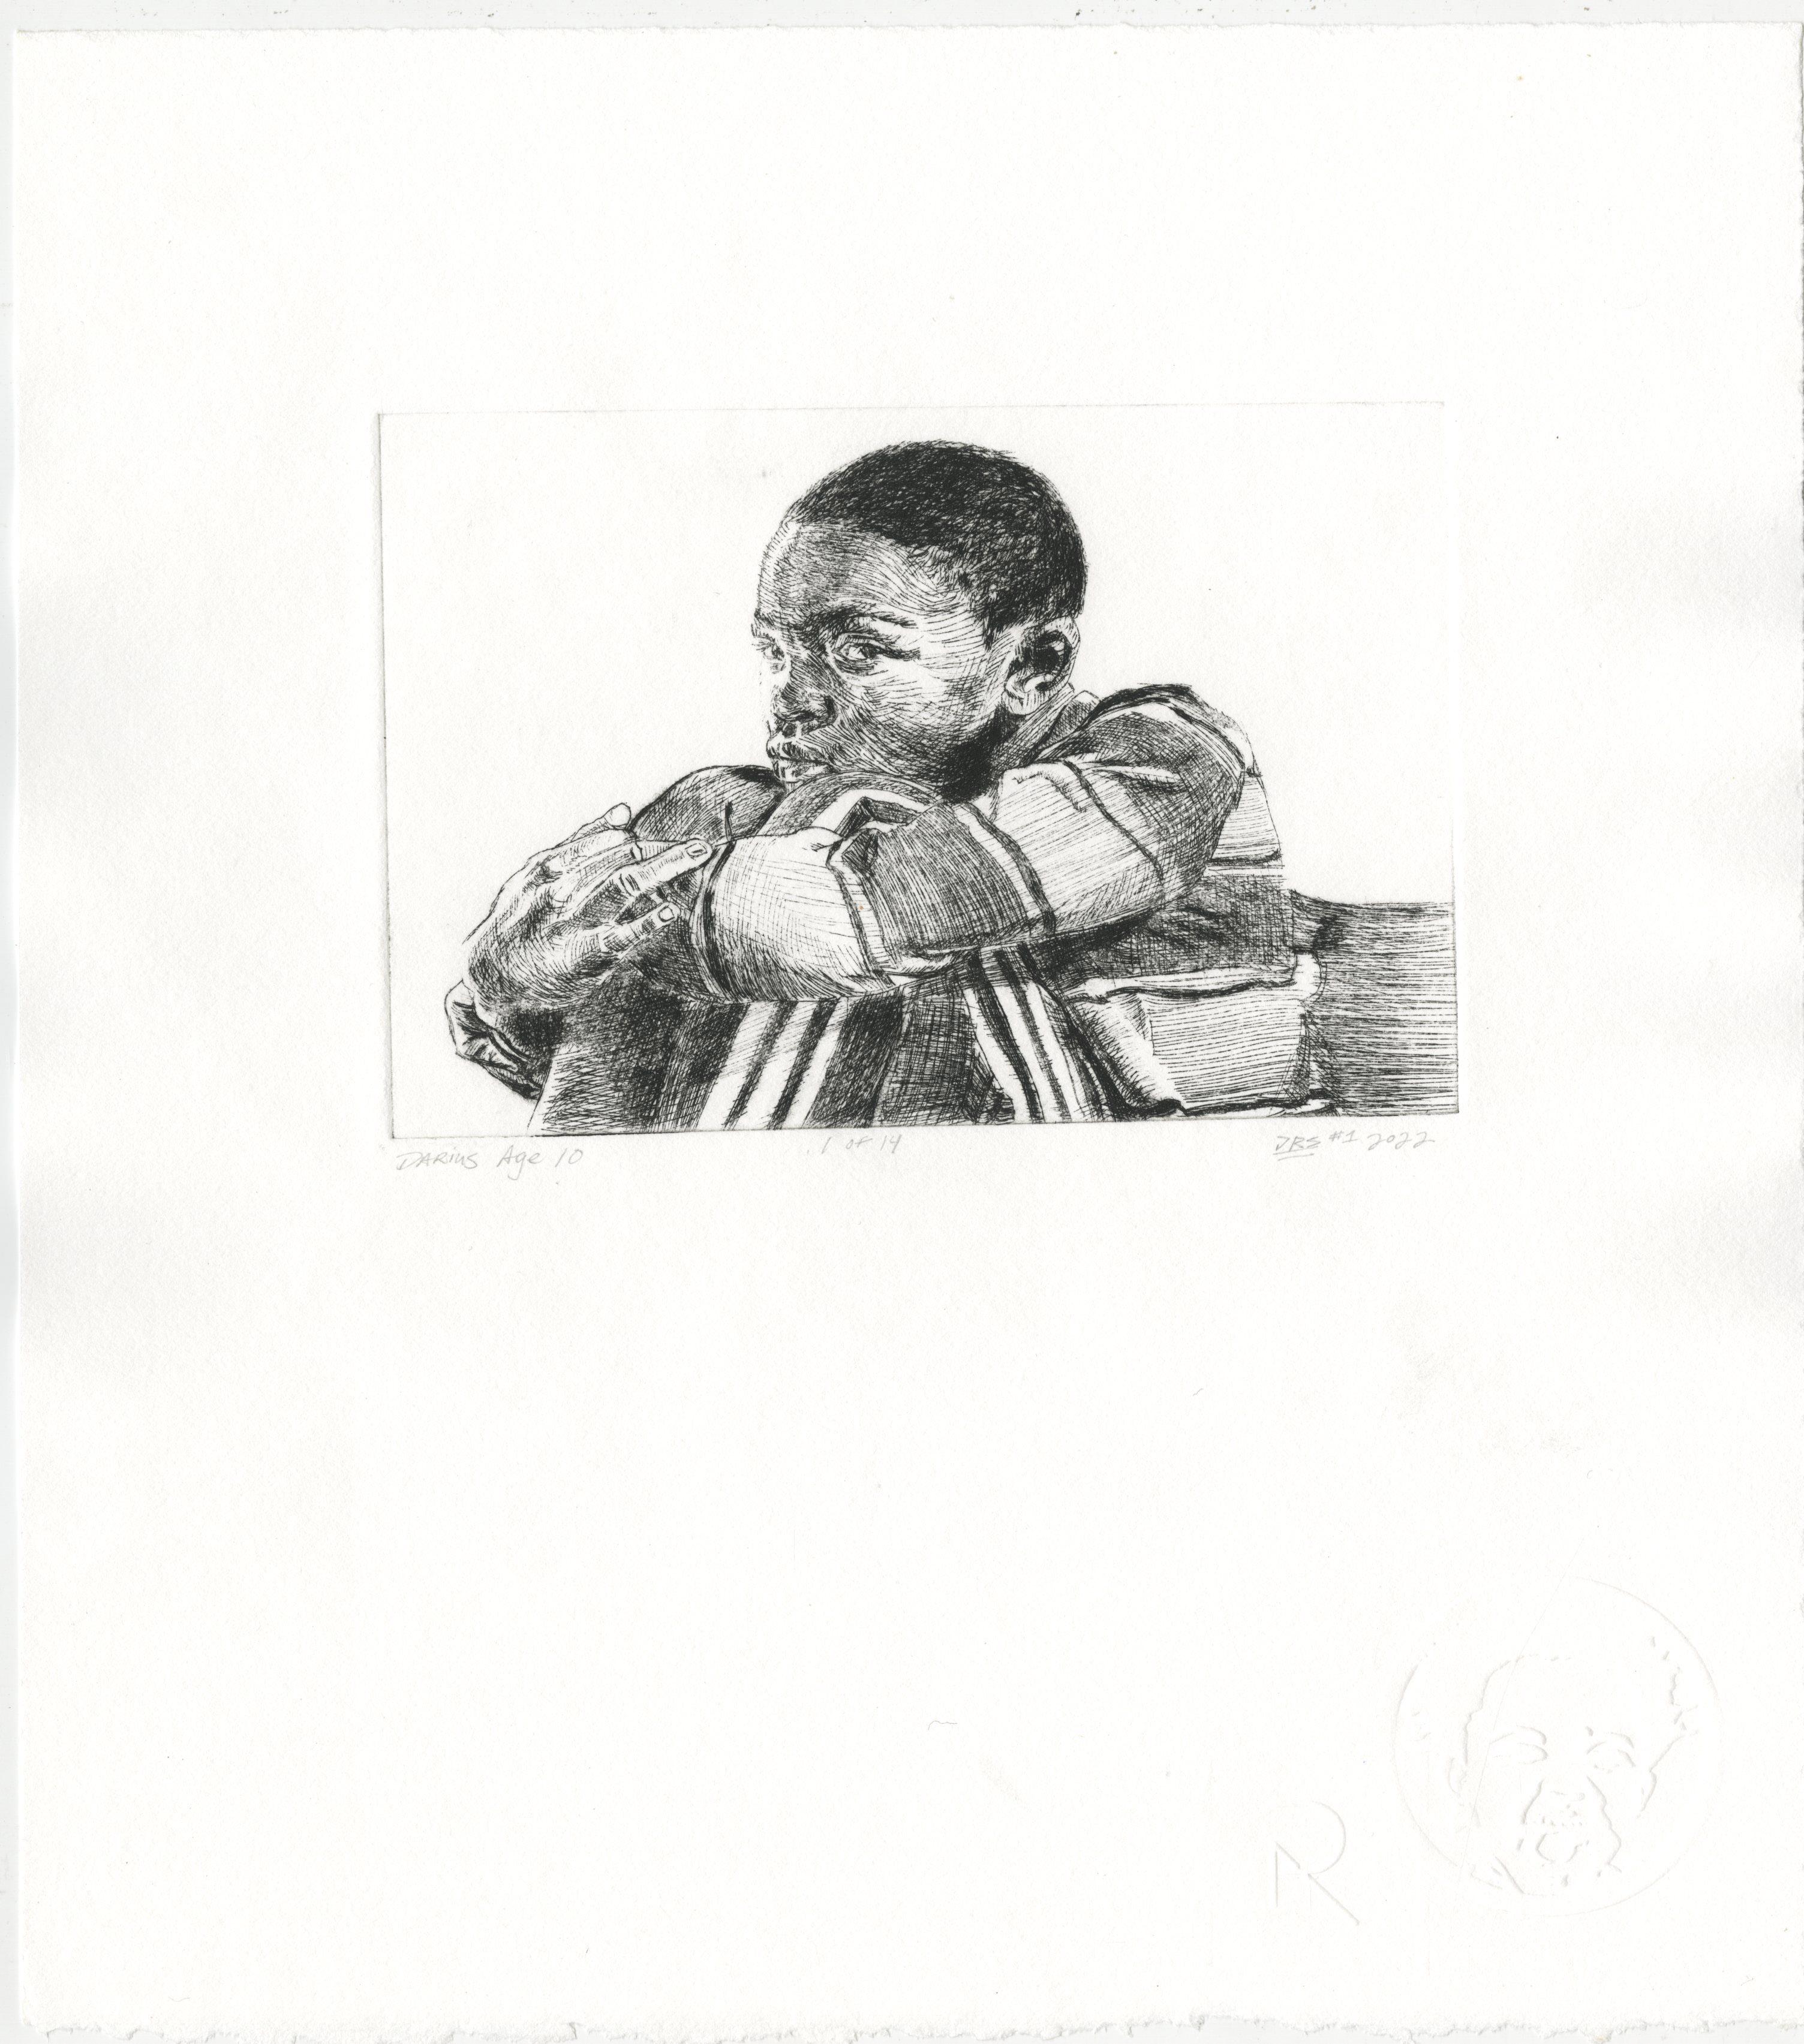 Darius at 10 - Print by Darius Steward